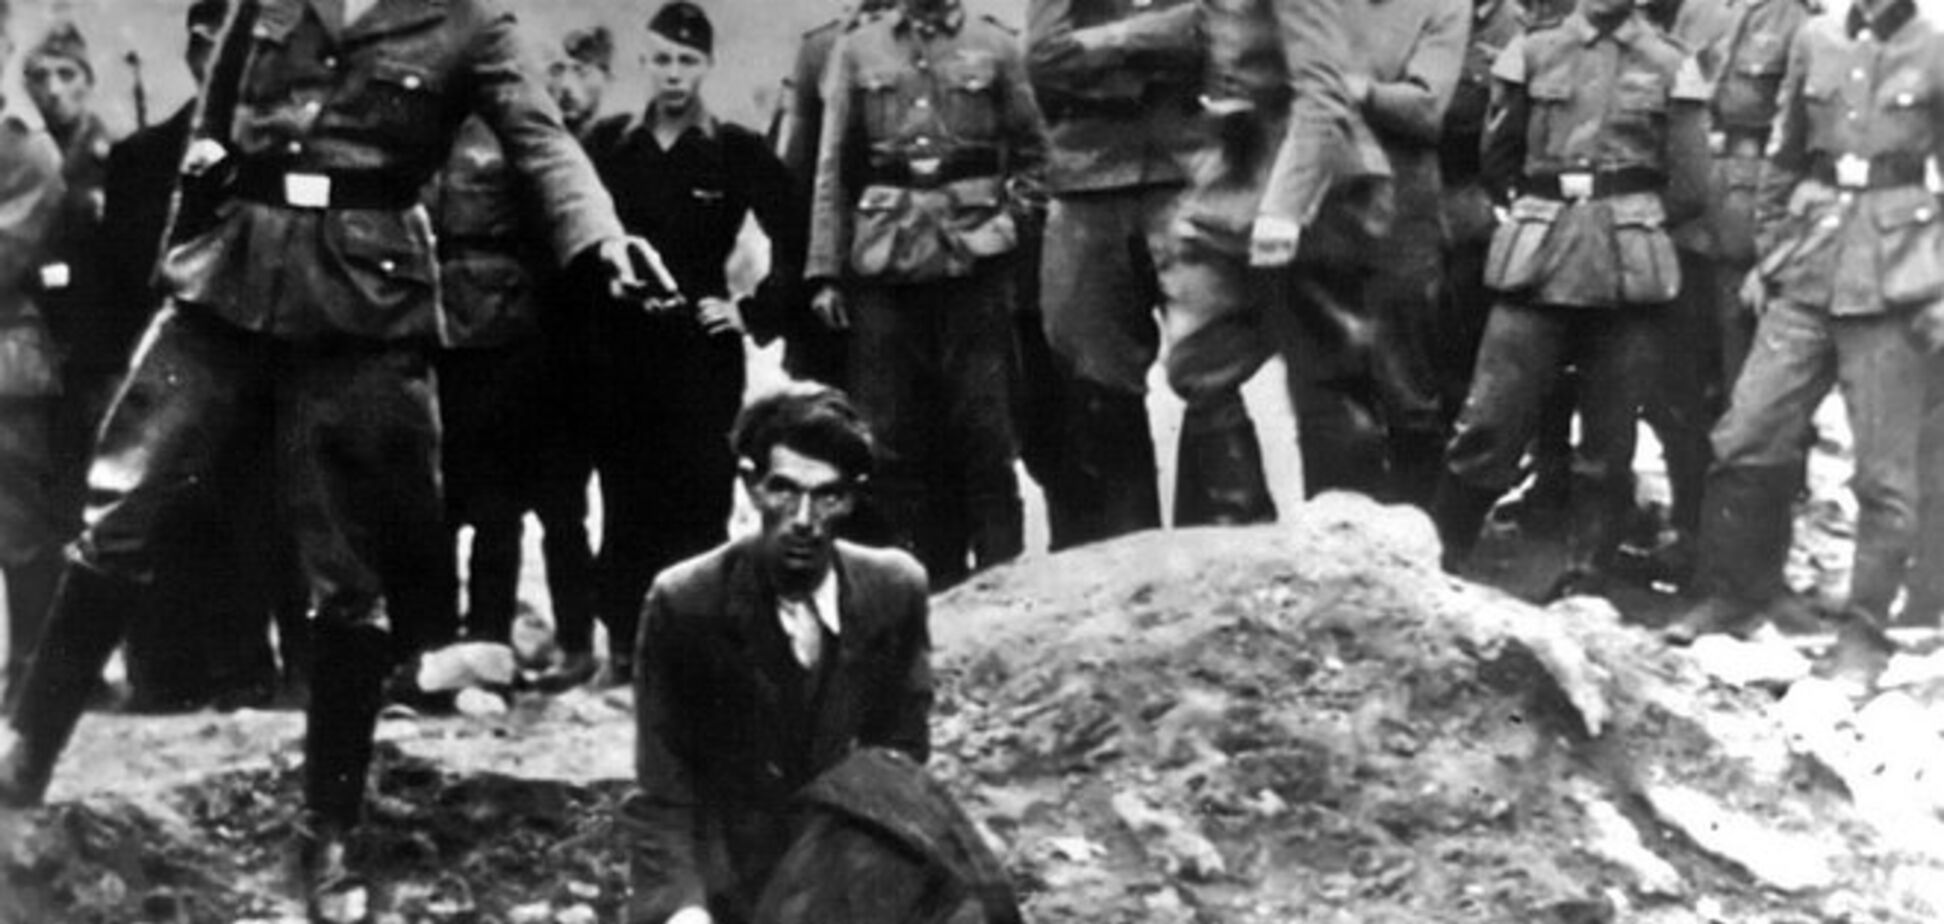 Мир вспоминает жертв Холокоста: Бабий Яр – памятник человеческой жестокости